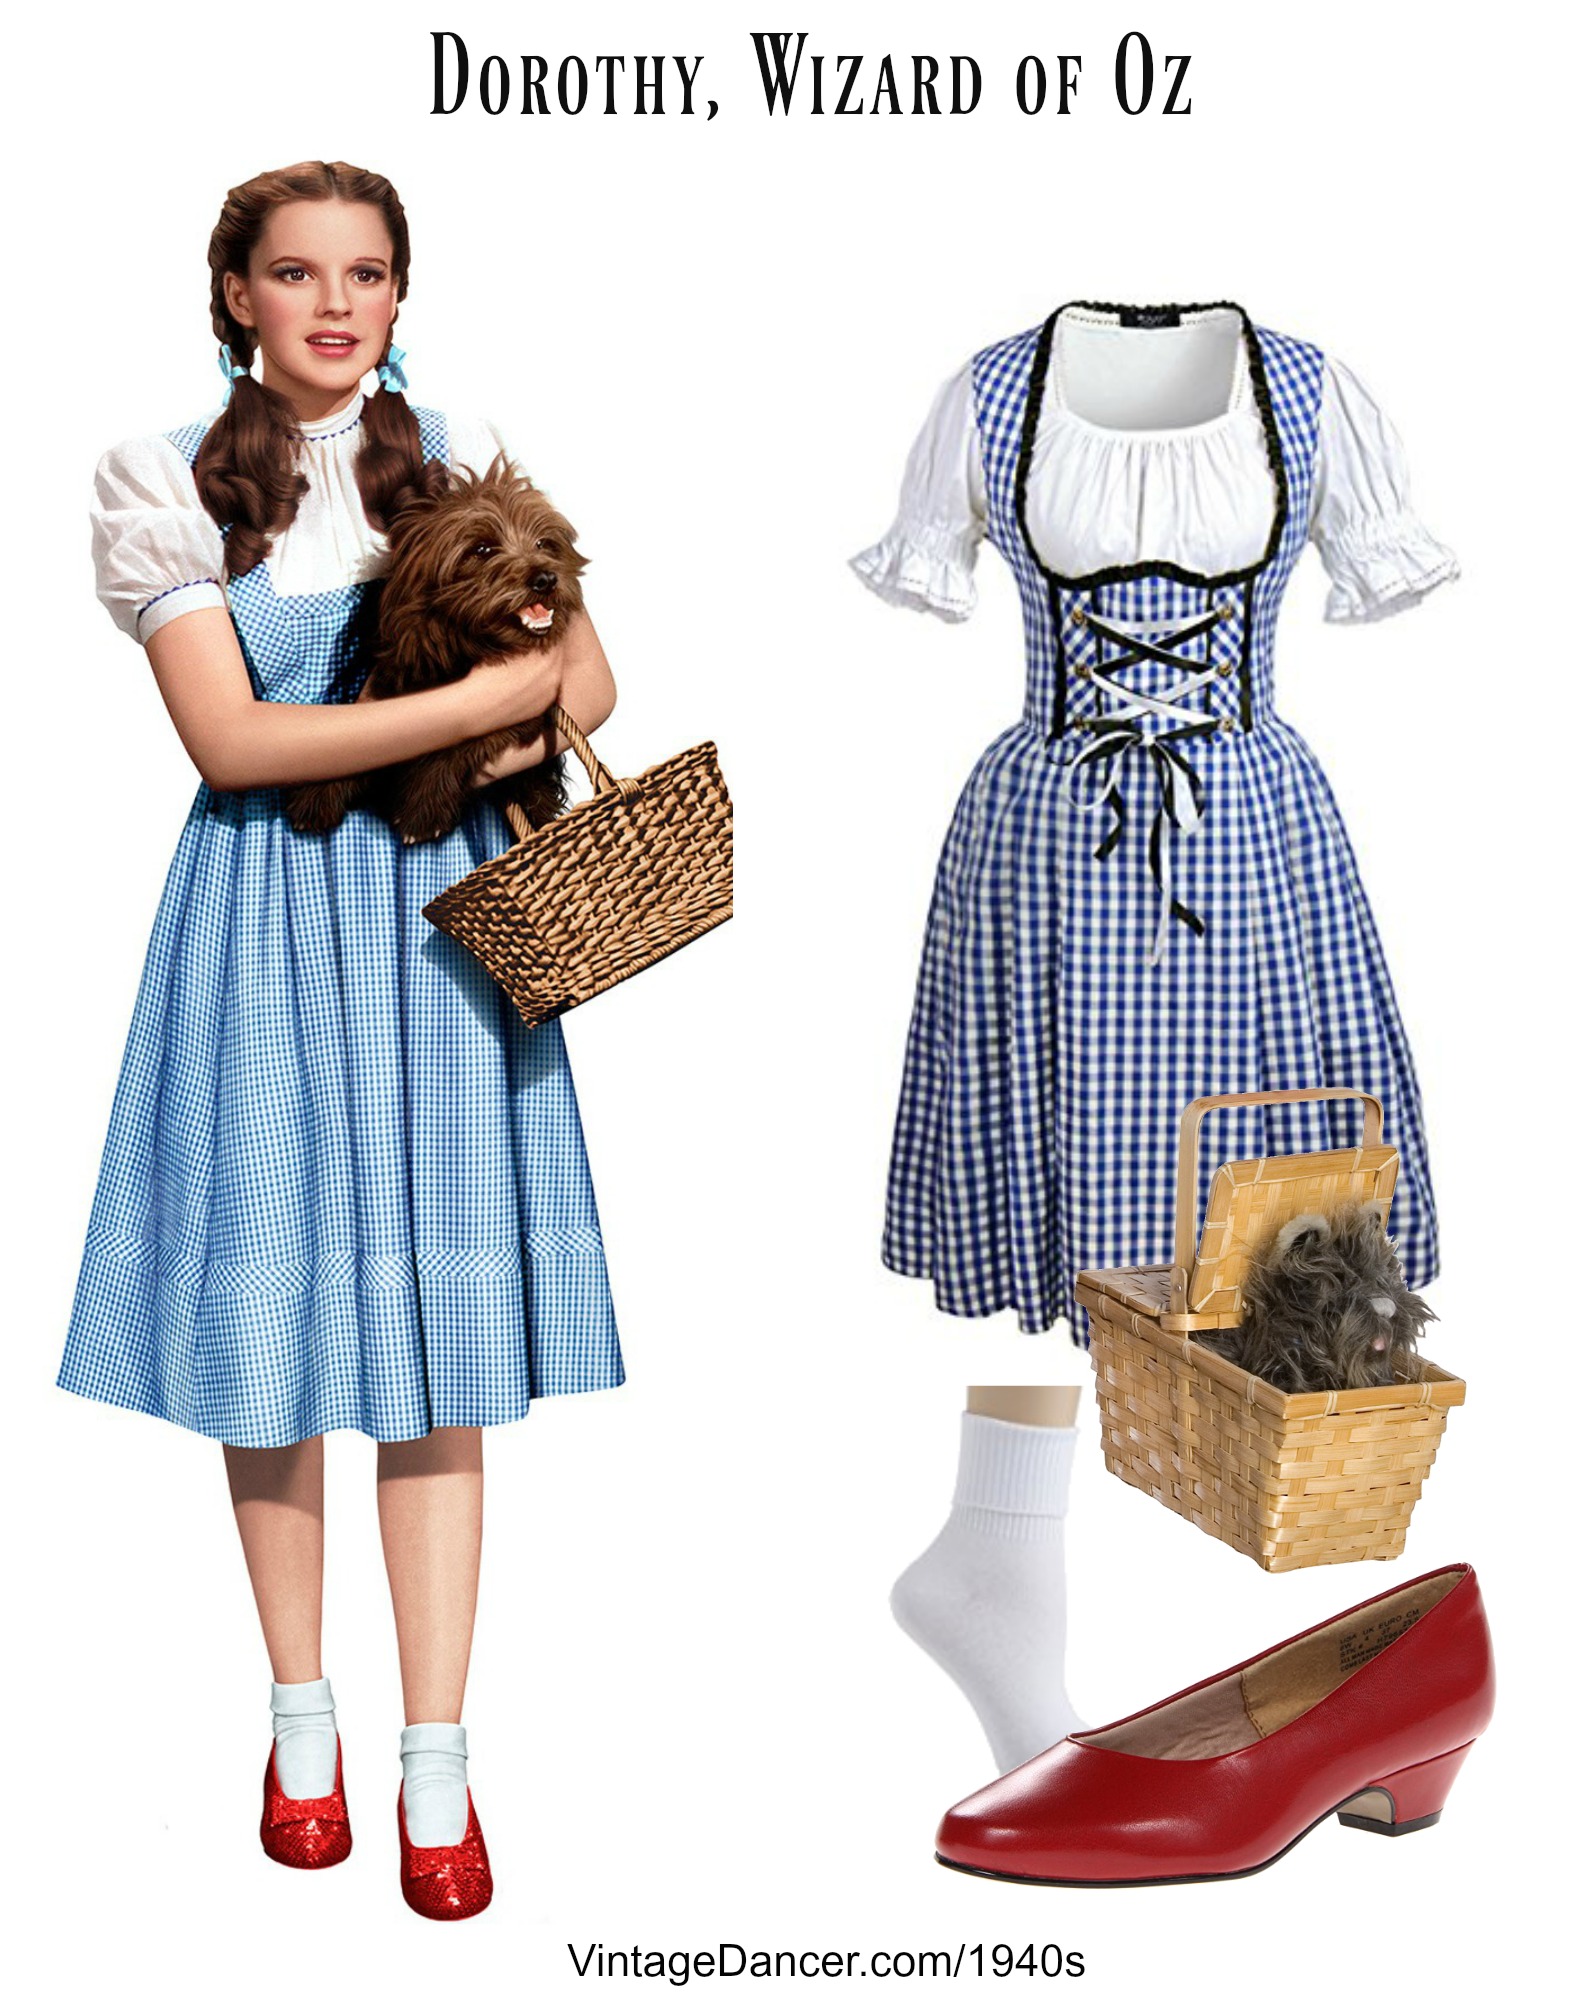 1940s Dorothy Costume, Wizard of Oz (1939) - at vintagedancer.com.